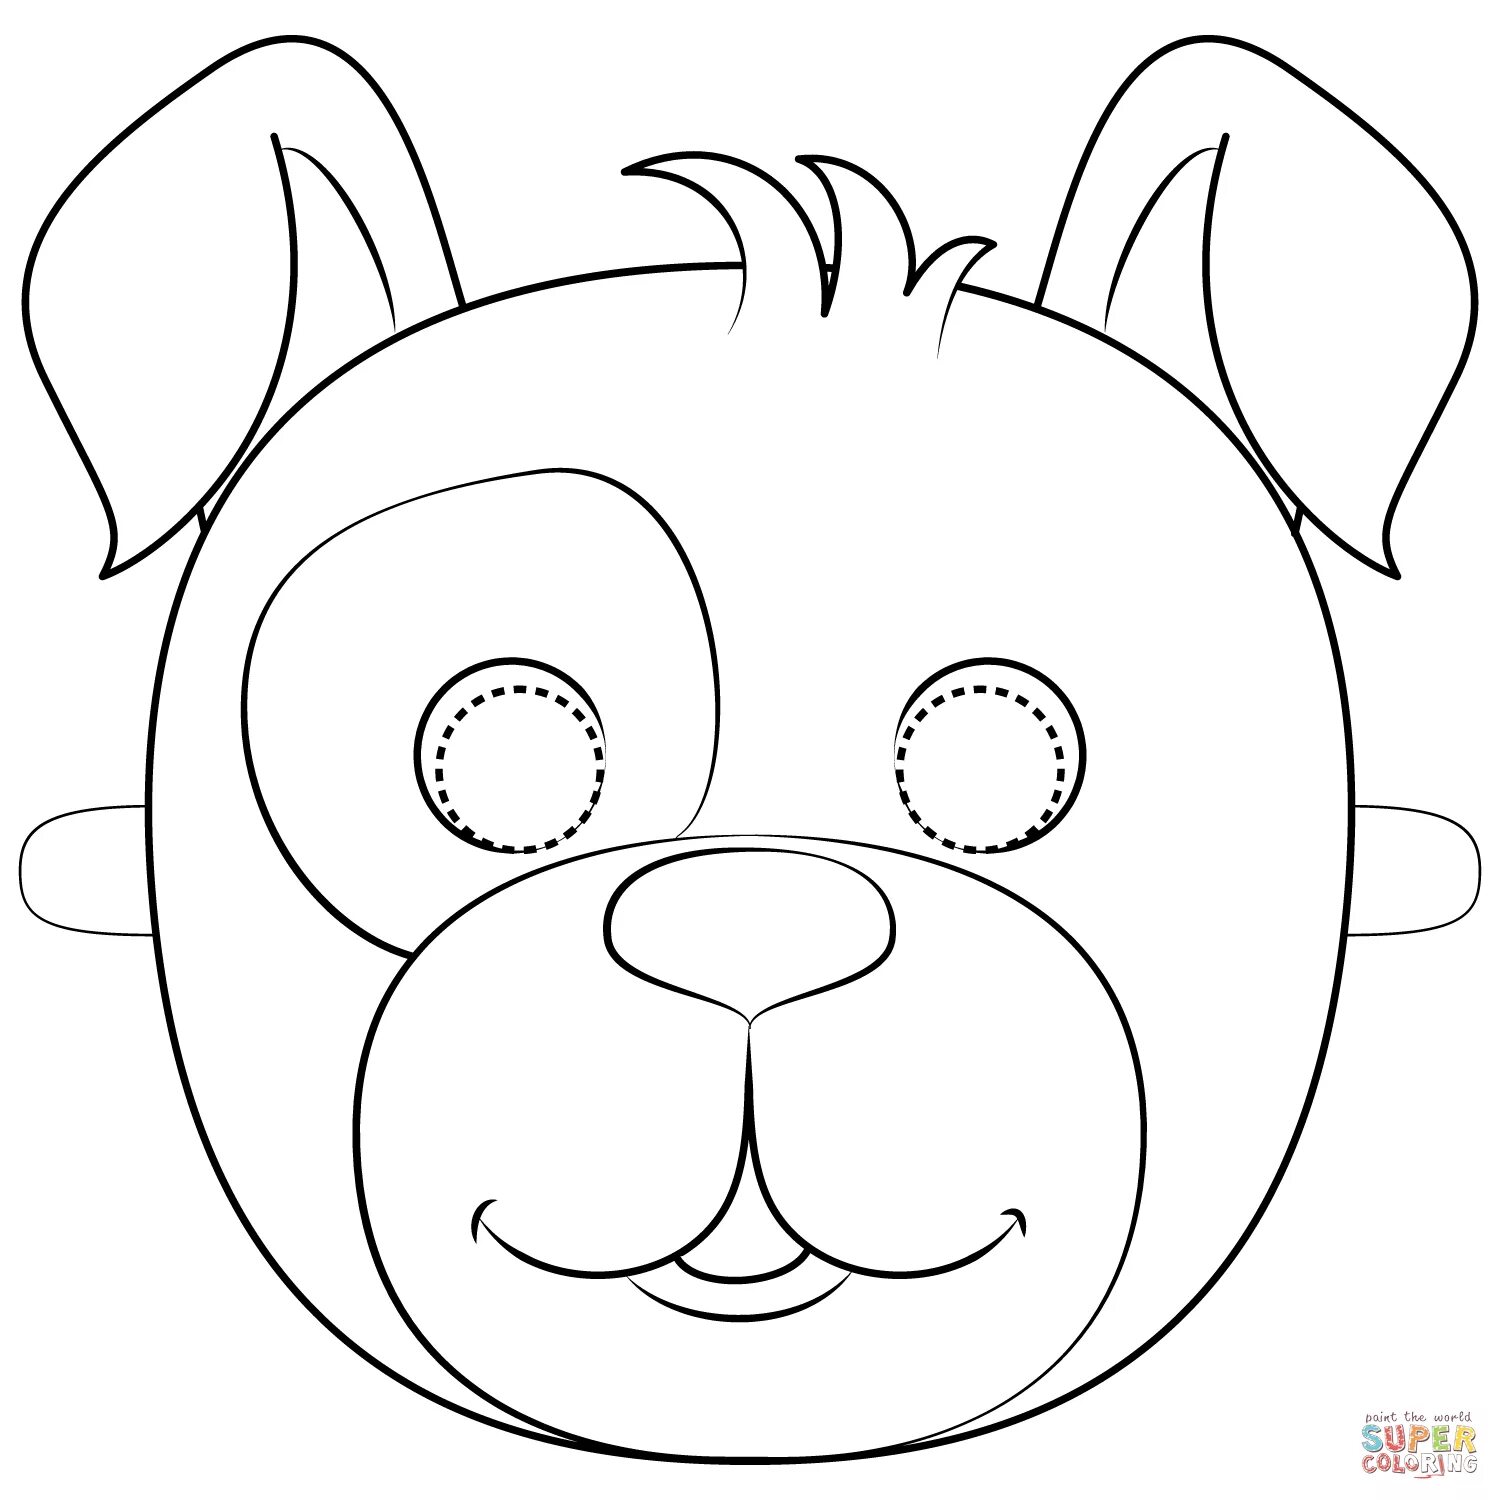 Распечатать голову собаки. Маска раскраска для детей. Раскраски маски животных. Маски животных для детей. Маска собаки раскраска.